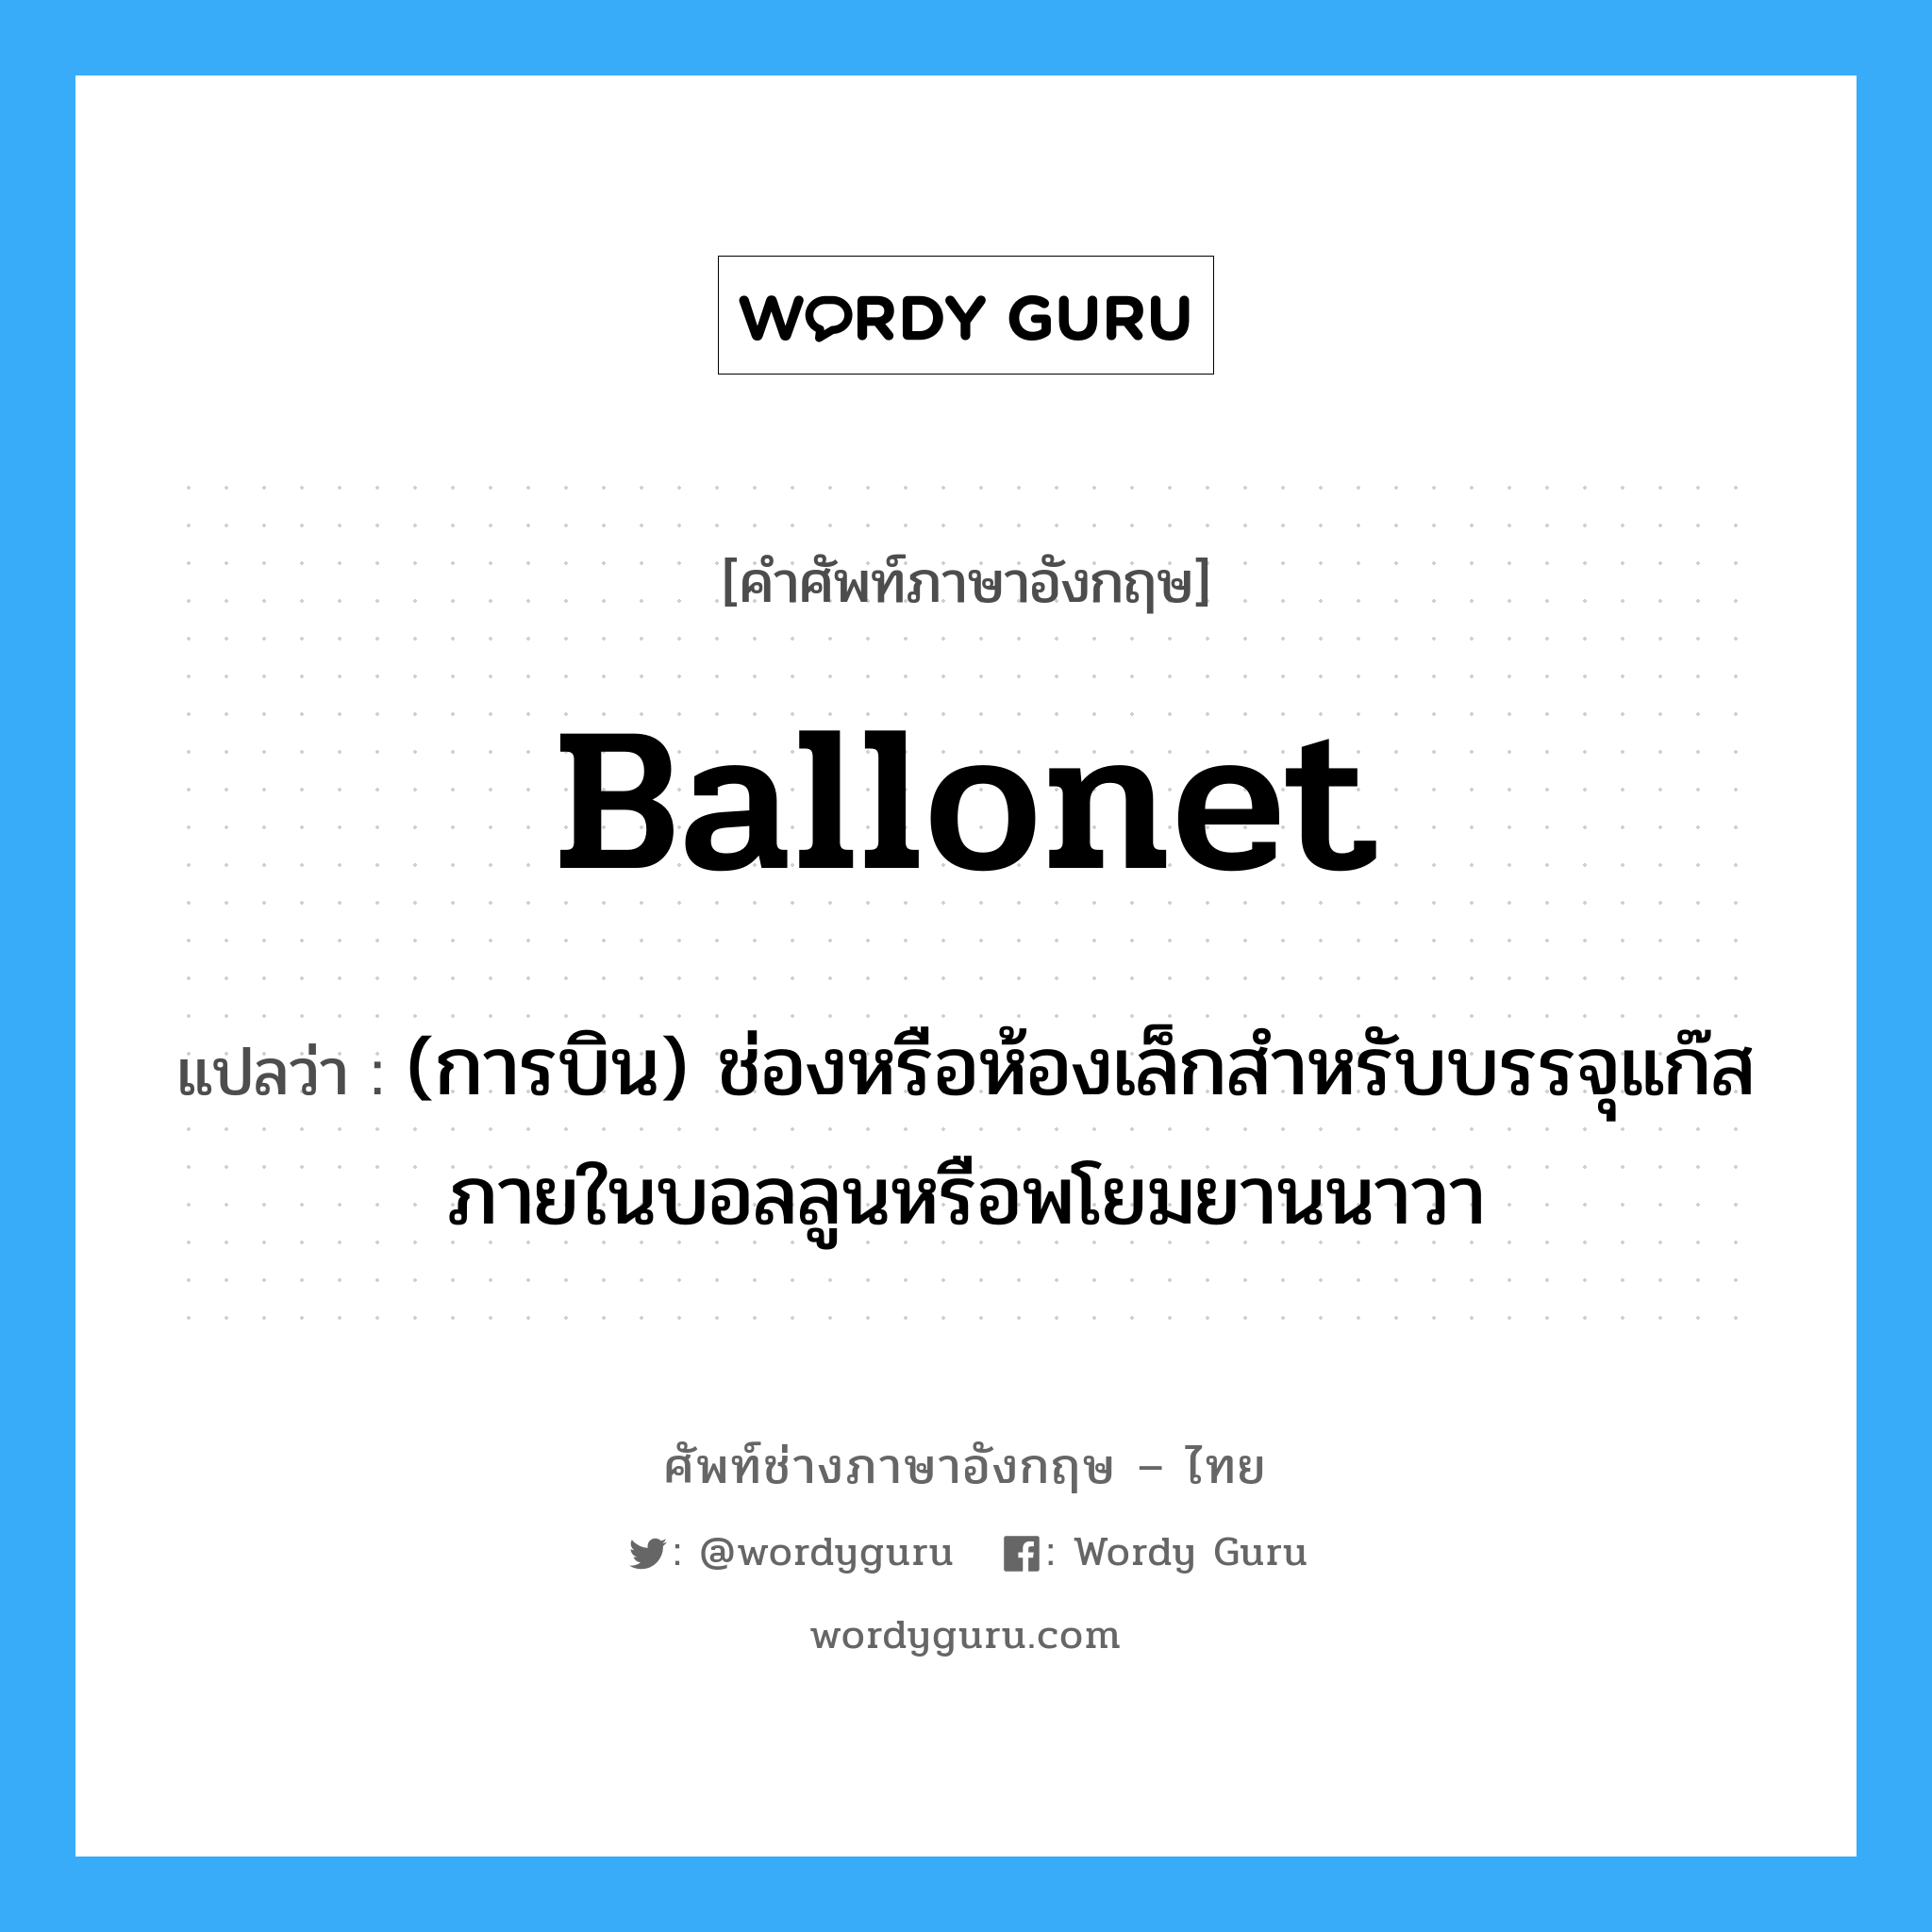 ballonet แปลว่า?, คำศัพท์ช่างภาษาอังกฤษ - ไทย ballonet คำศัพท์ภาษาอังกฤษ ballonet แปลว่า (การบิน) ช่องหรือห้องเล็กสำหรับบรรจุแก๊สภายในบอลลูนหรือพโยมยานนาวา